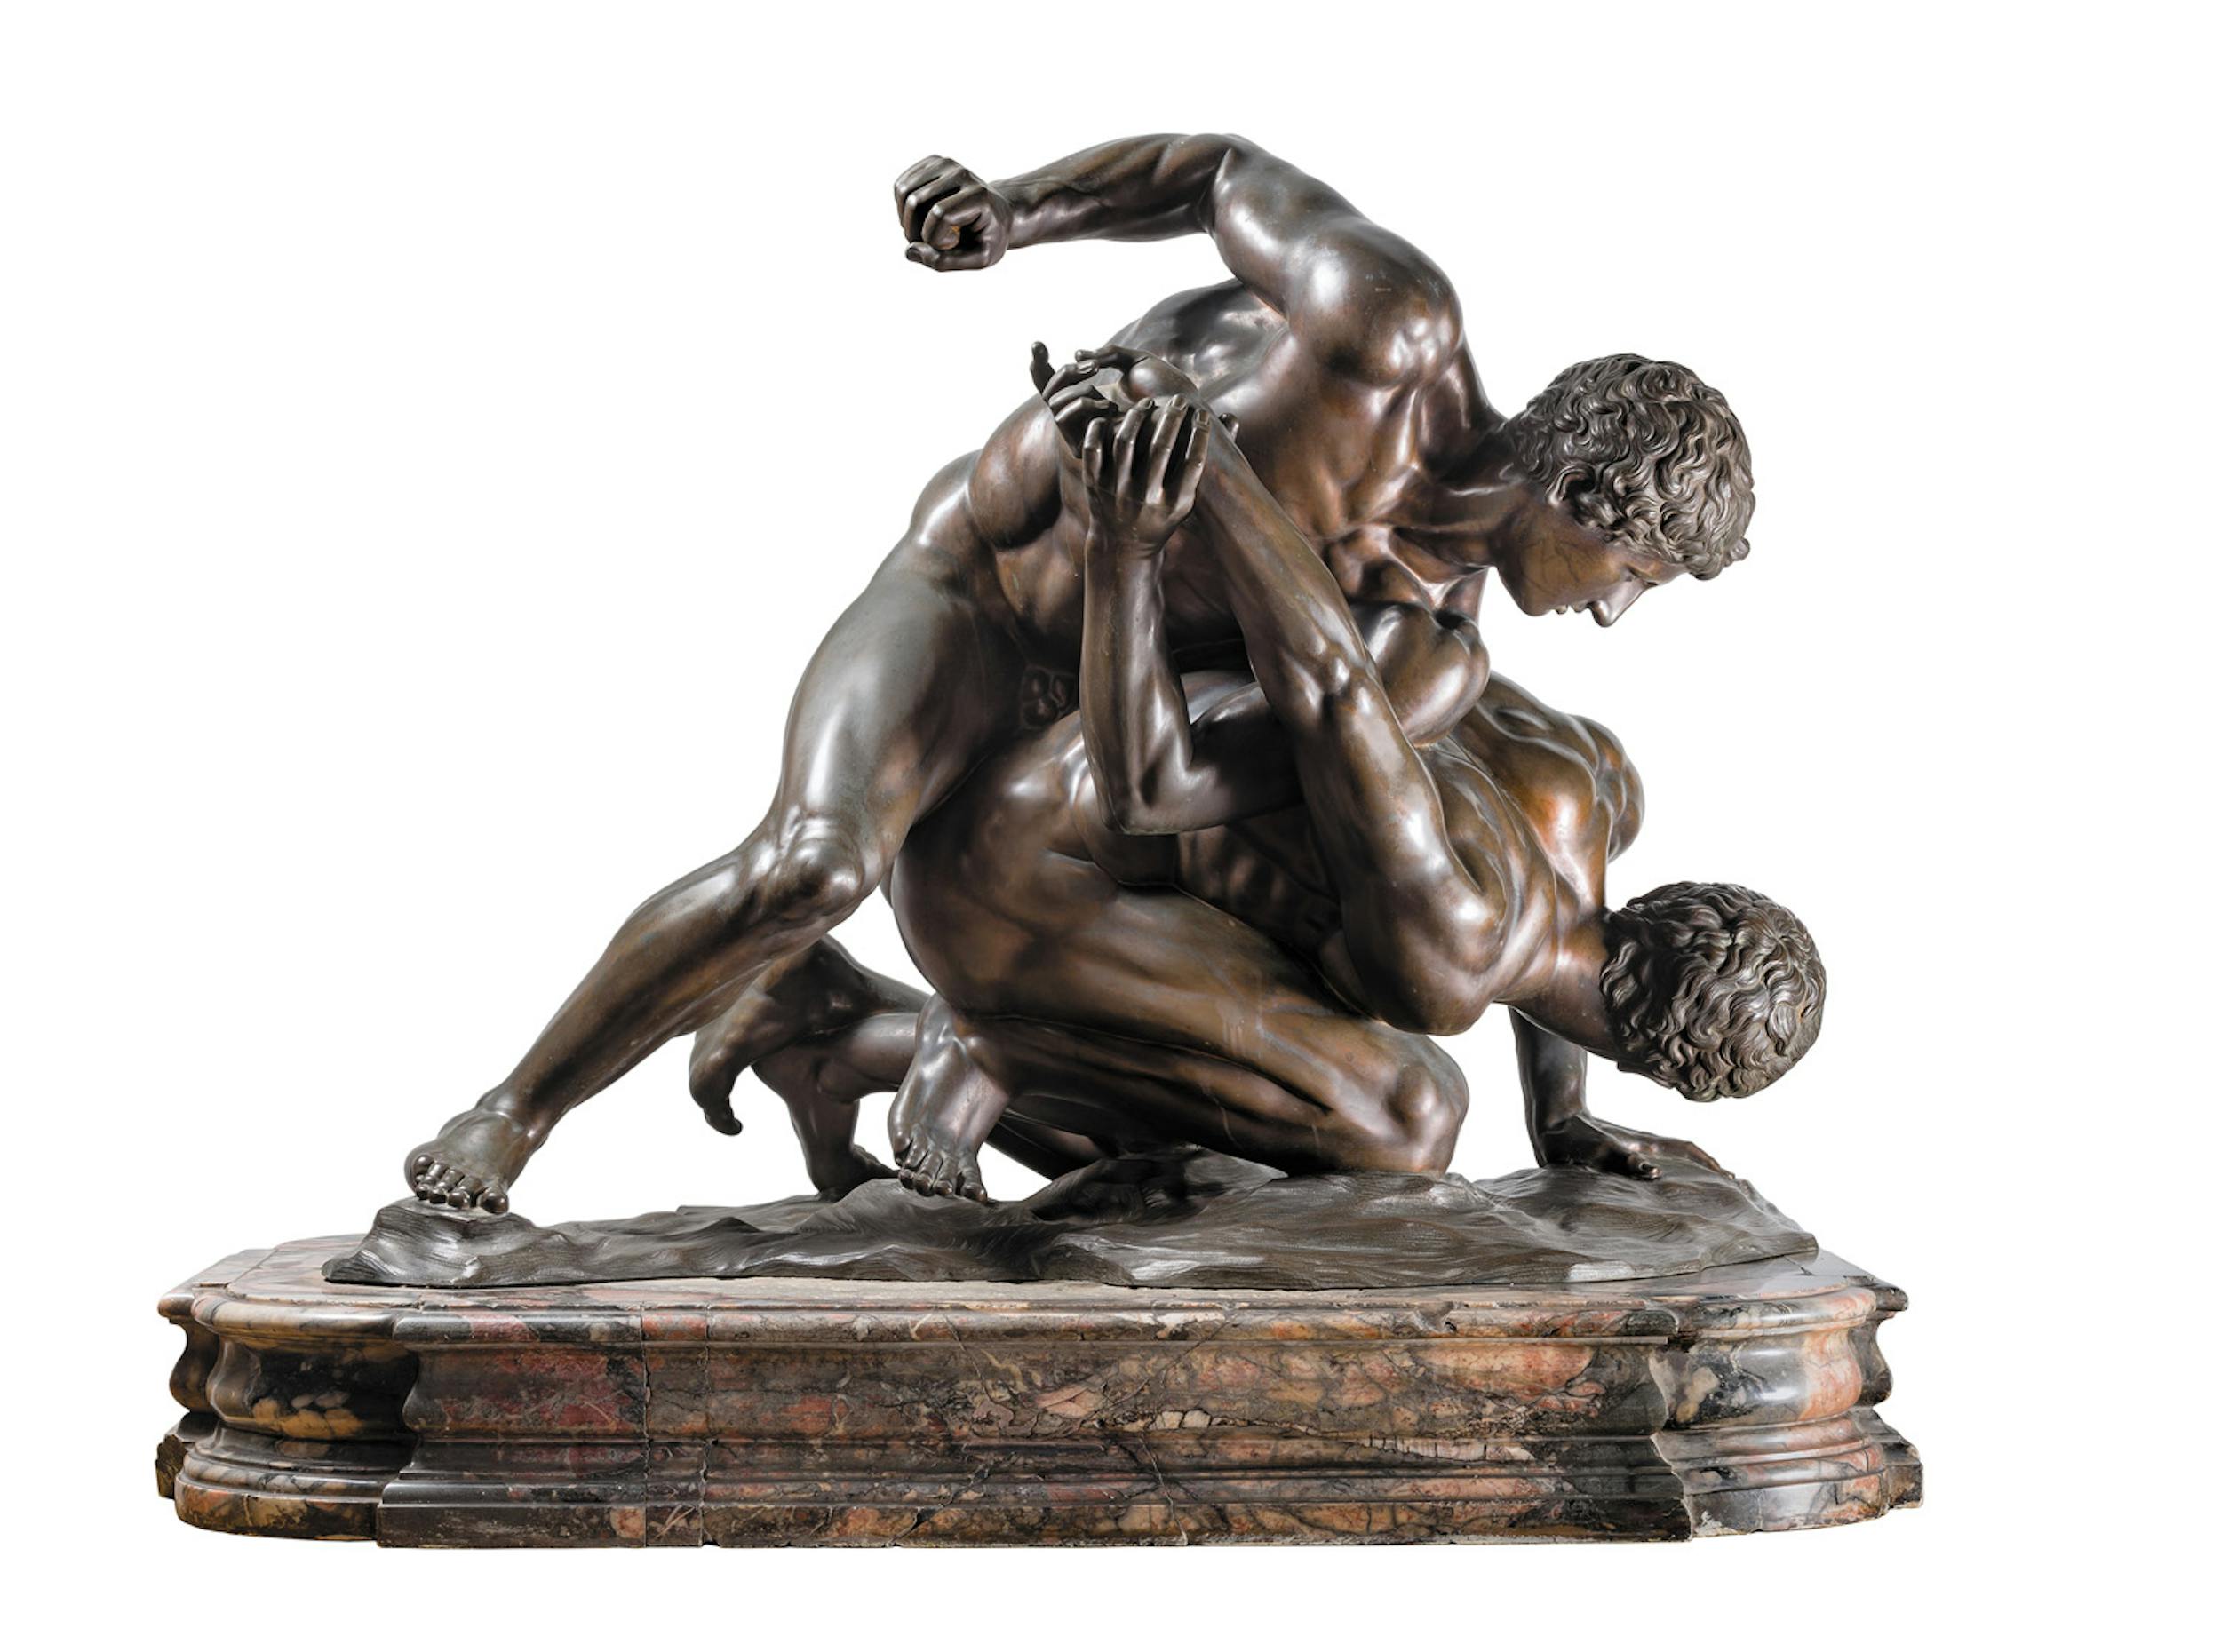 Giovan Battista Foggini Lottatori 1714-1715 bronzo patinato Ministero dell’Economia e delle Finanze (in deposito dalle Gallerie degli Uffizi), Roma